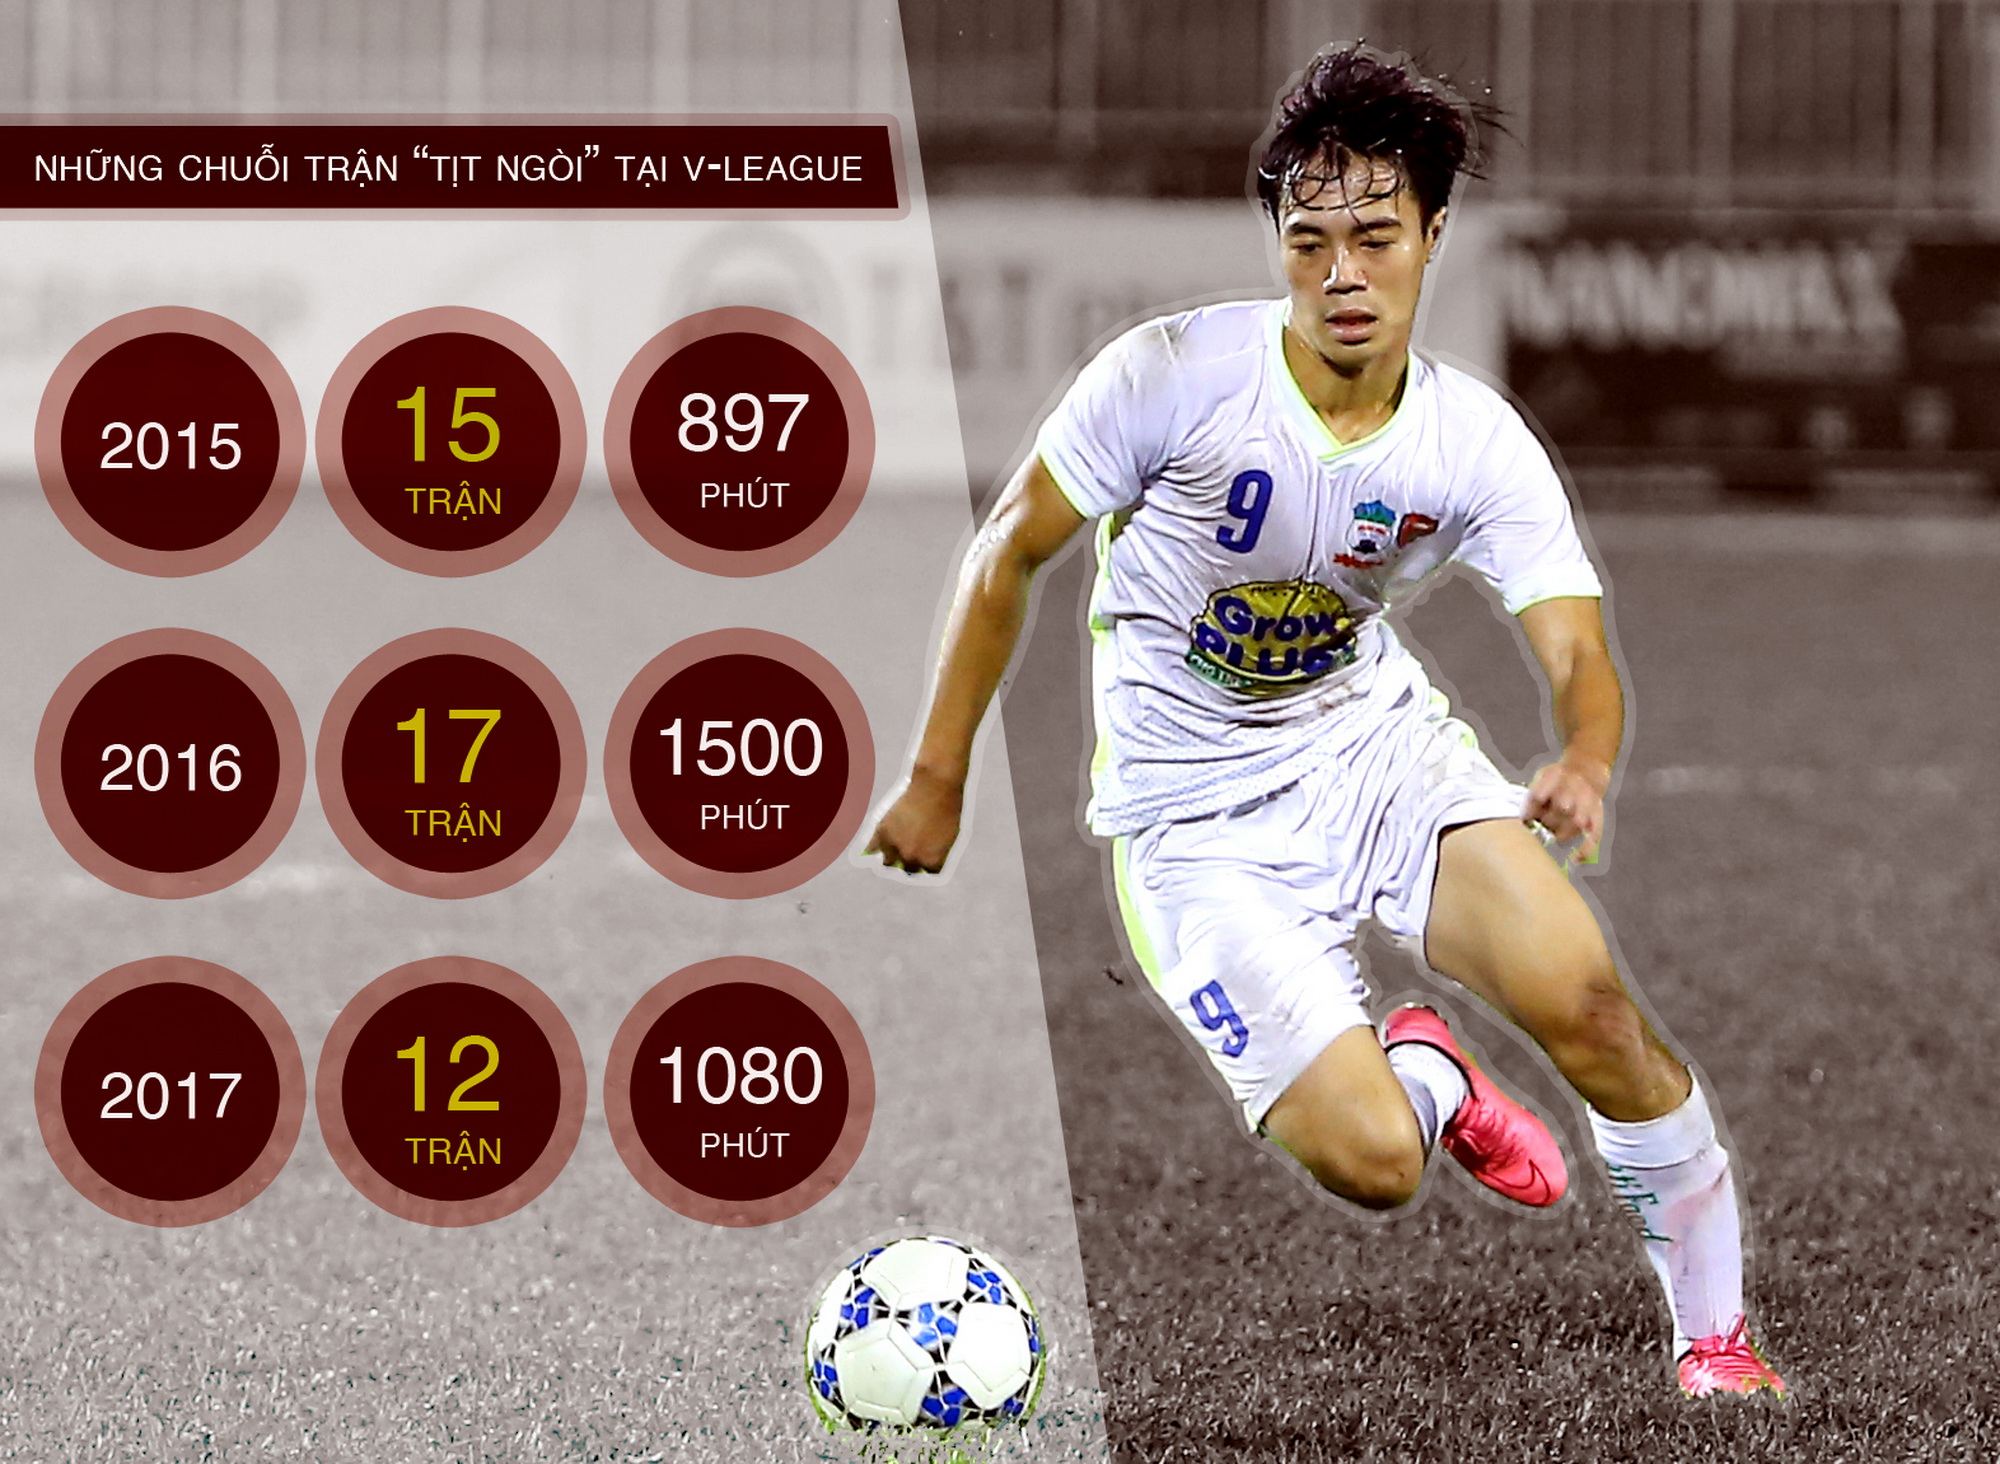 Thống kê những chuỗi trận không ghi bàn của Văn Toàn trong ba mùa giải V-League từ 2015 tới 2017. (Đồ họa: Hiếu Lương)